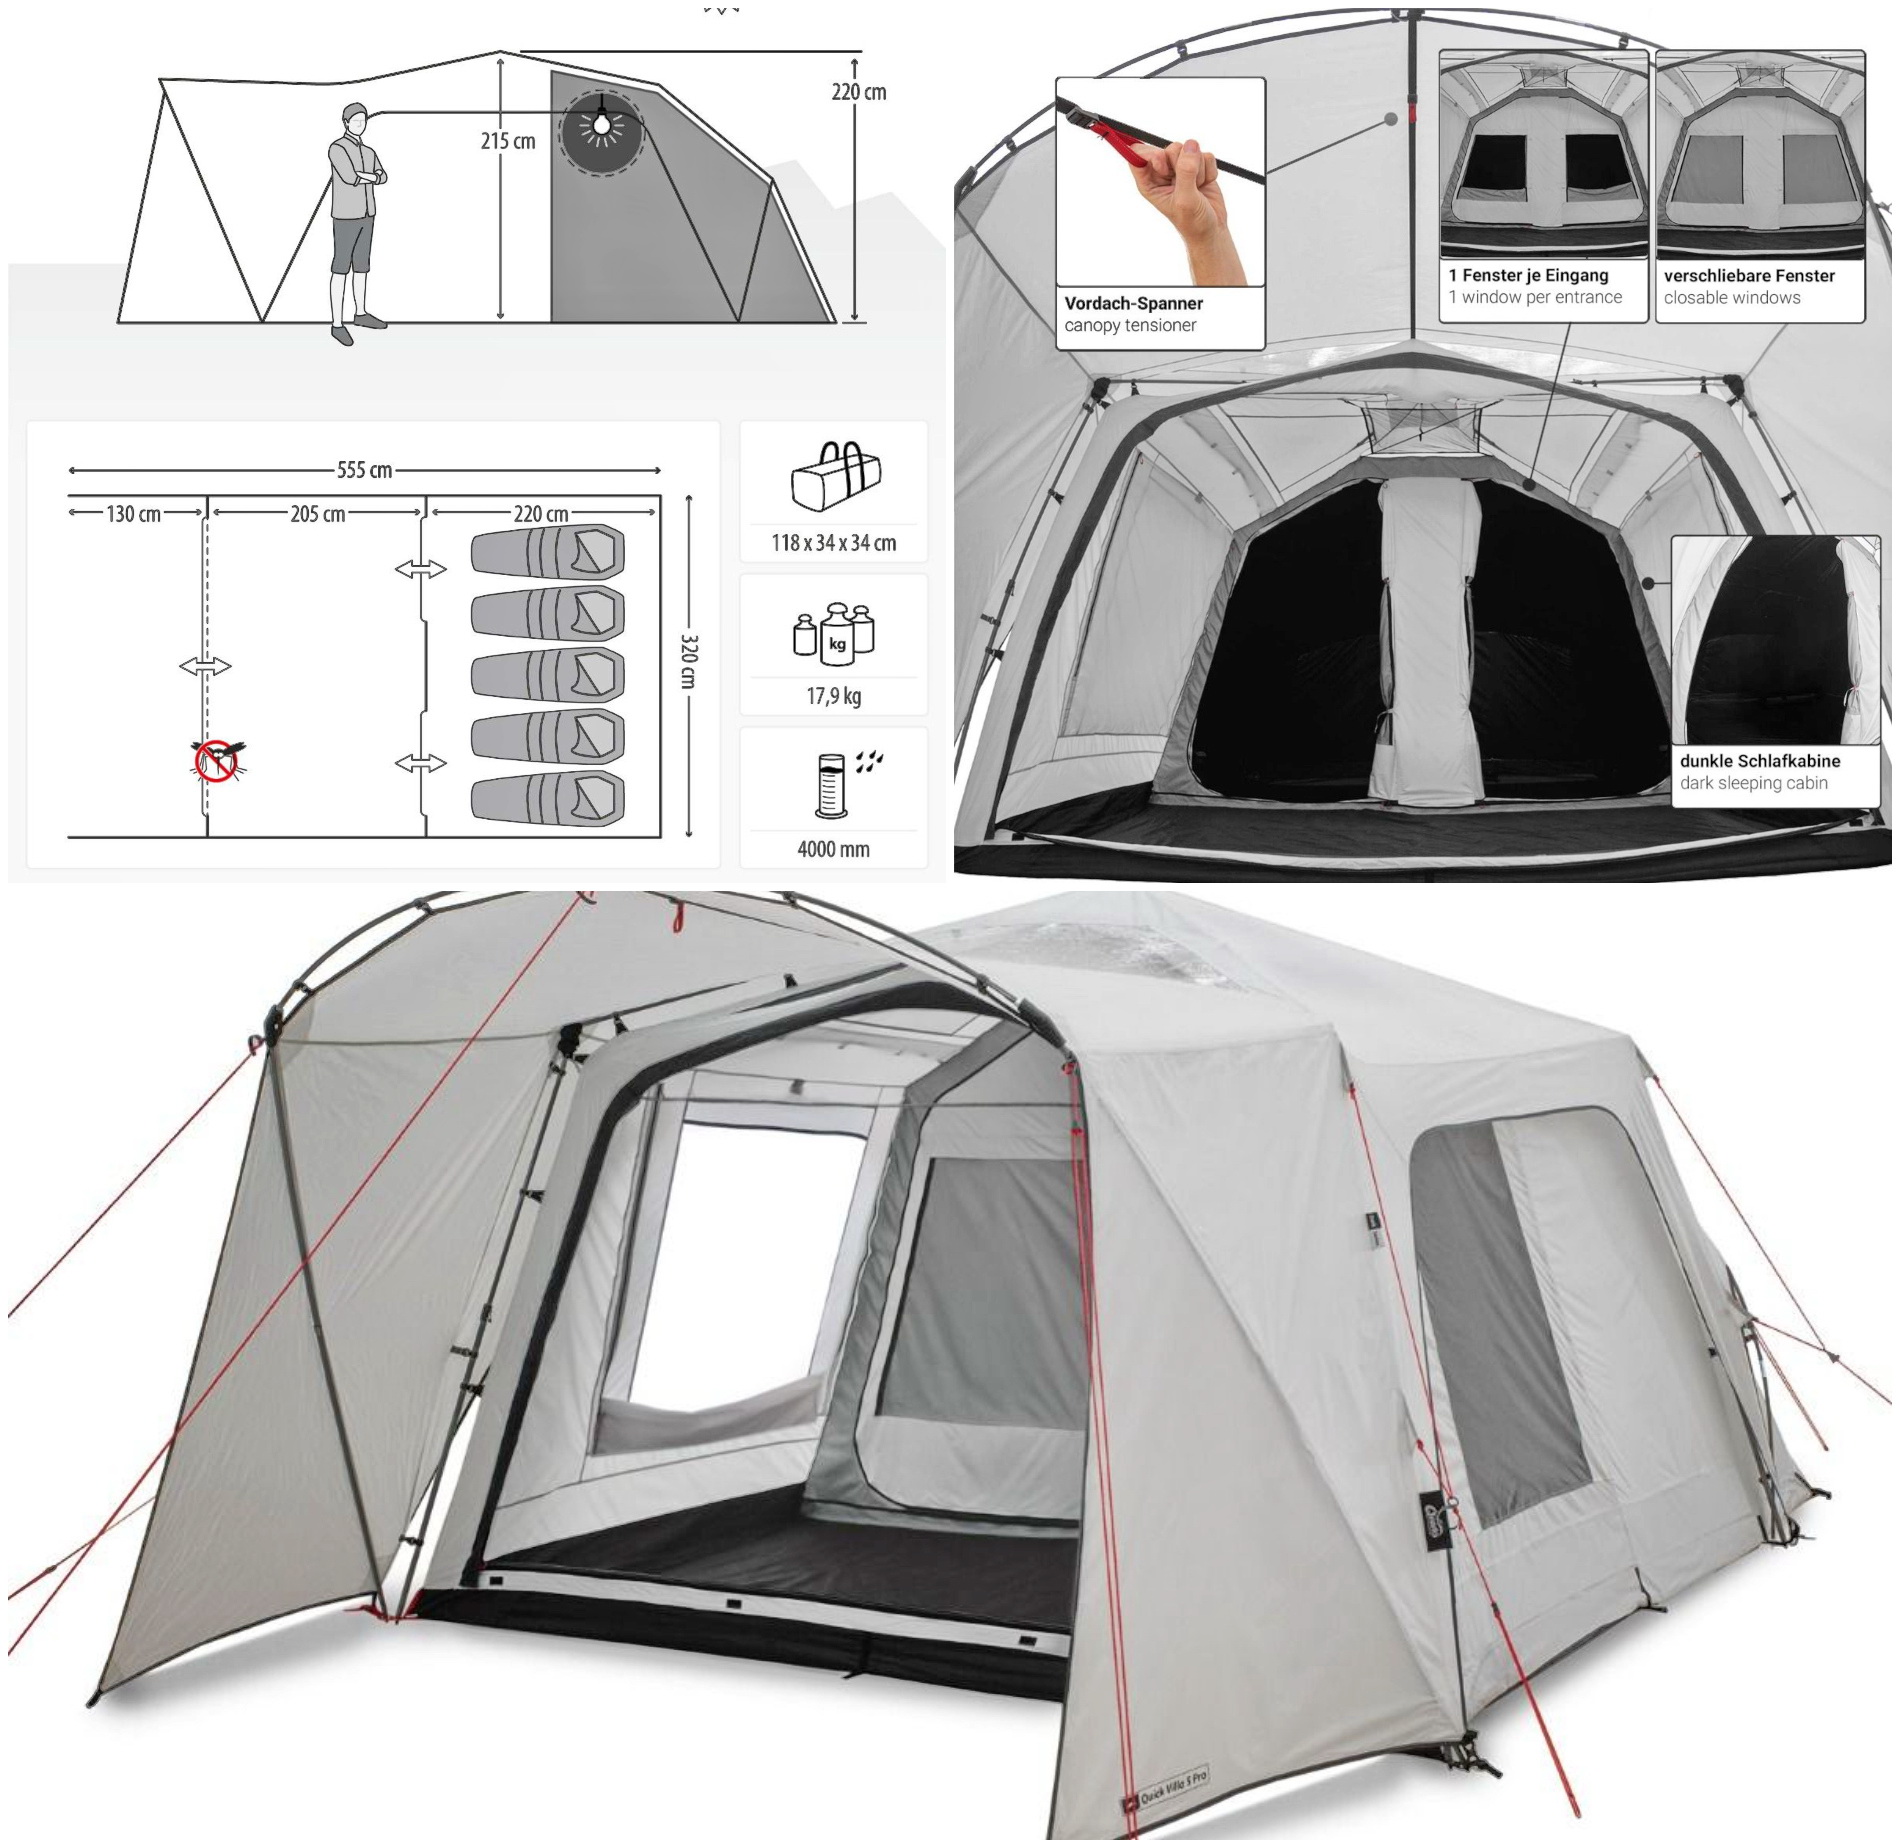 NaZraku.si - akcijska ponudba šotorov za udobno kampiranje - Avtokampi.si